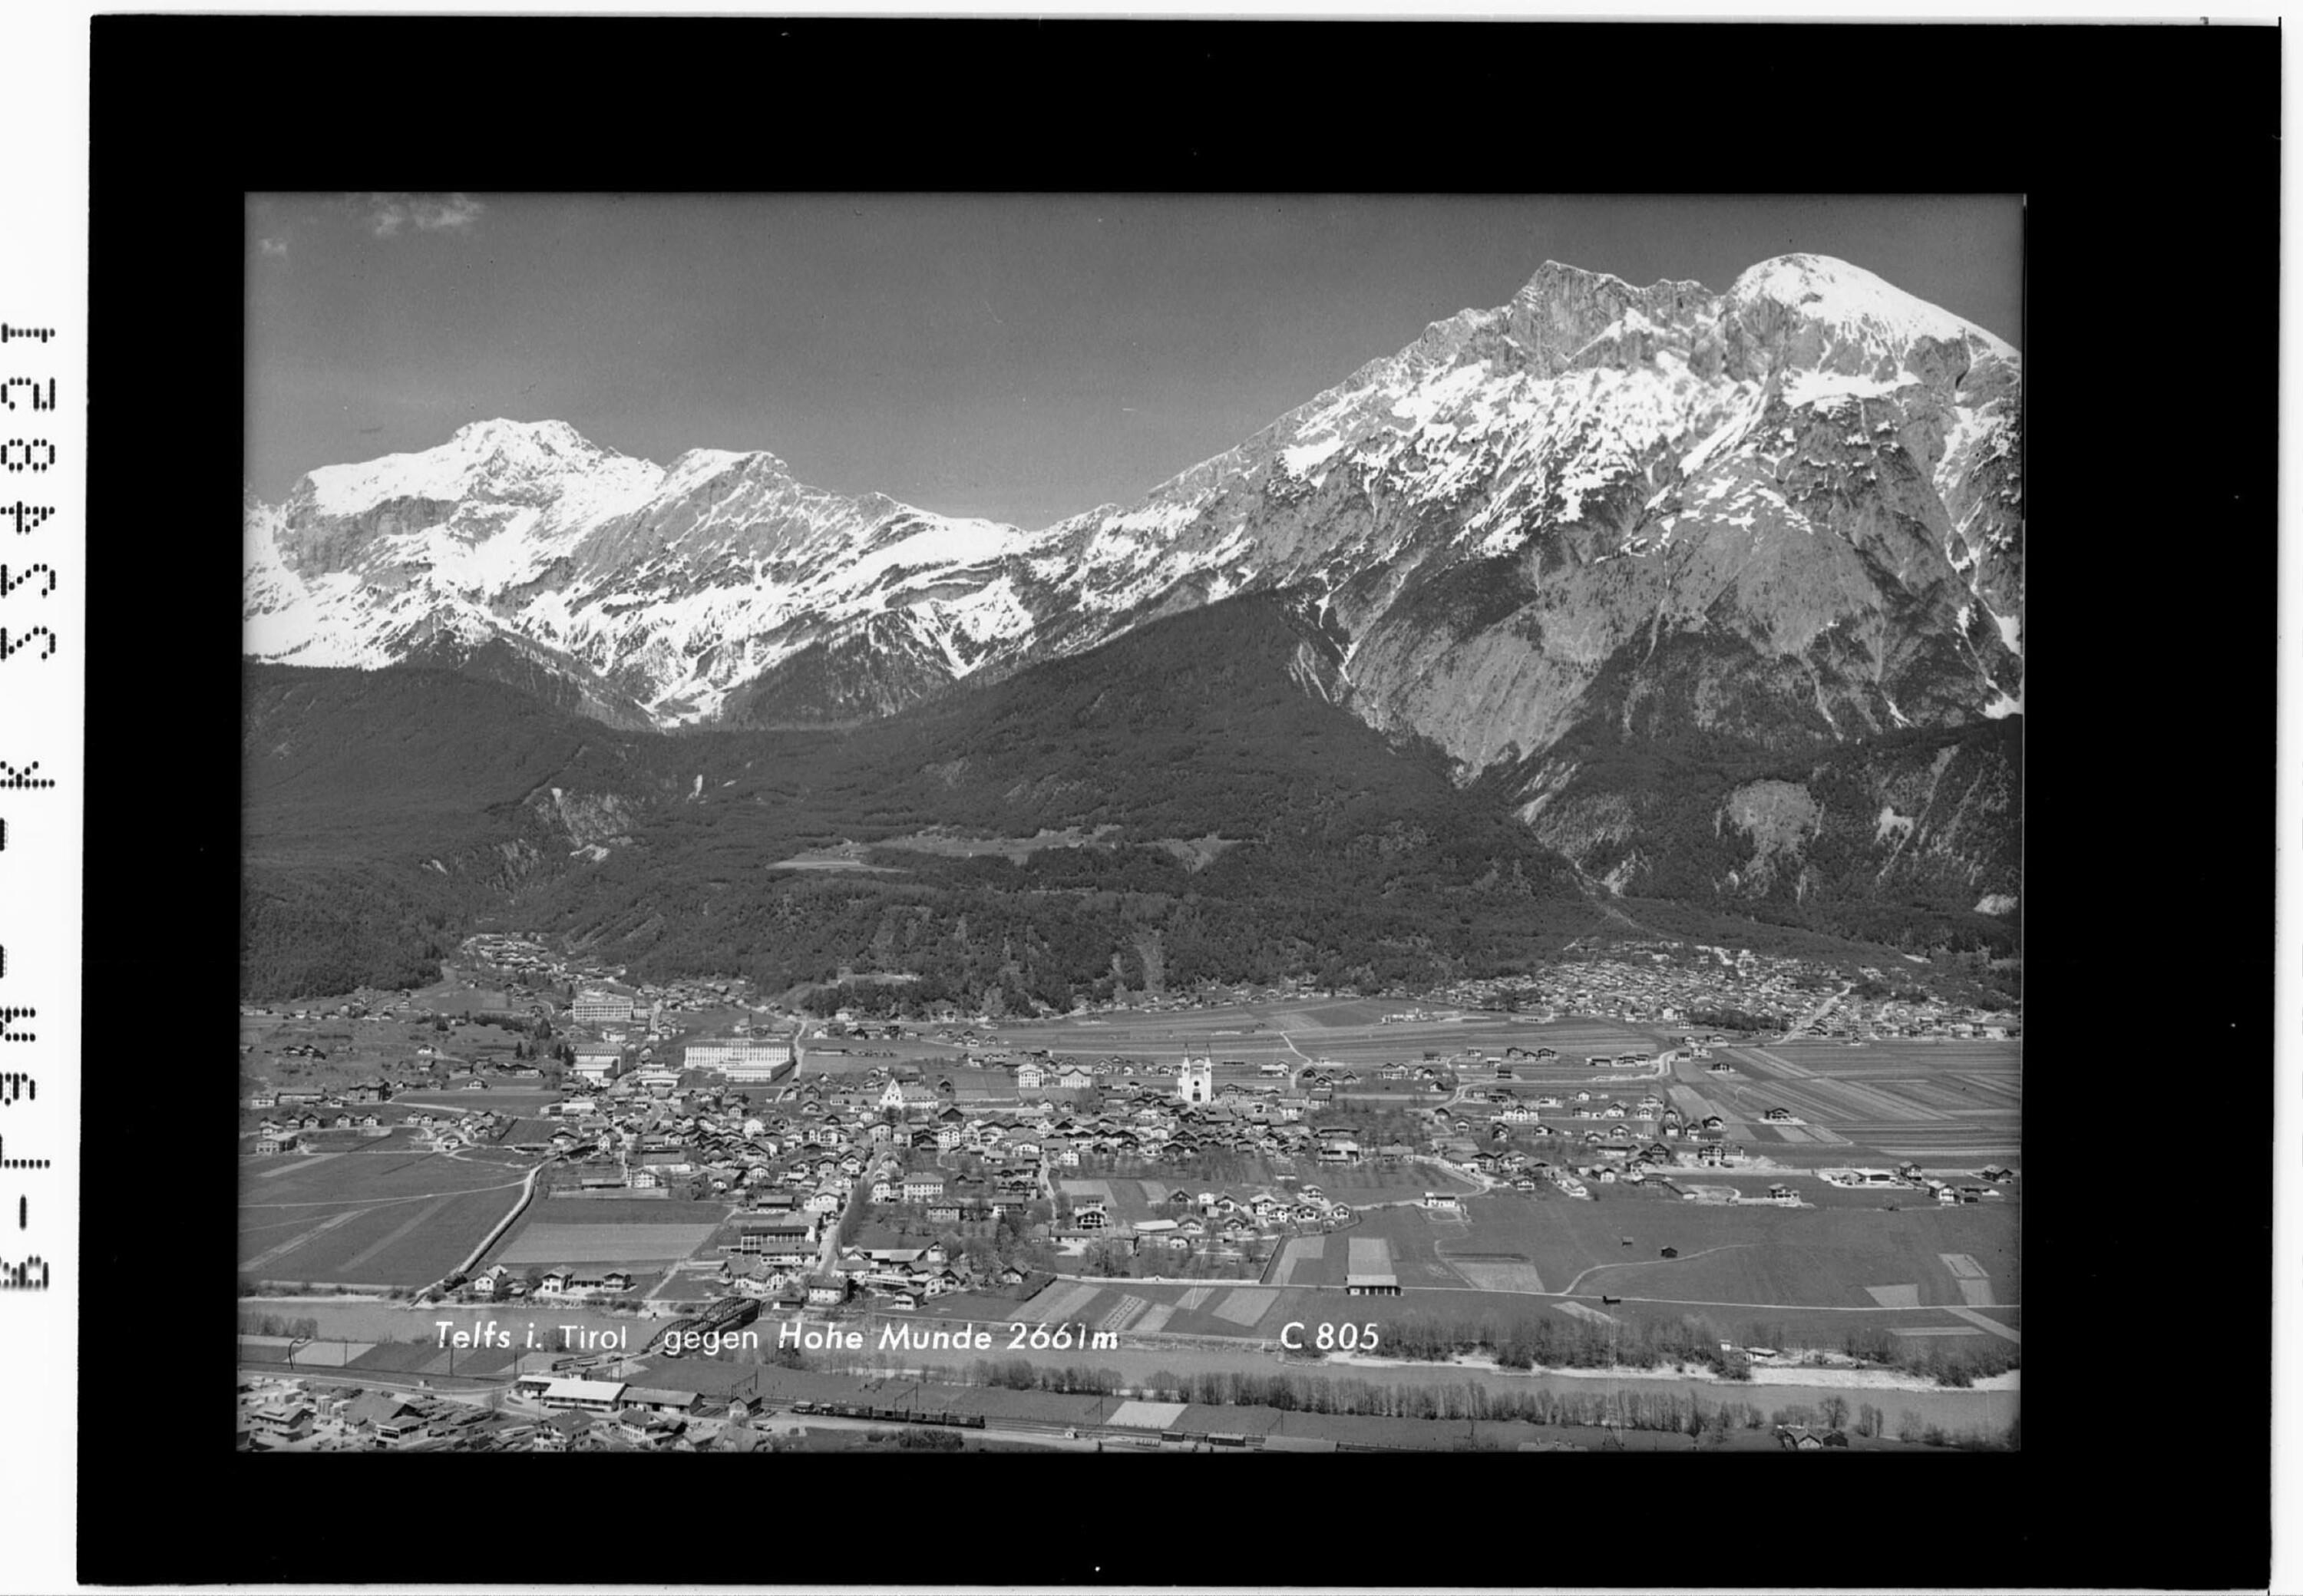 Telfs in Tirol gegen Hohe Munde 2662 m></div>


    <hr>
    <div class=